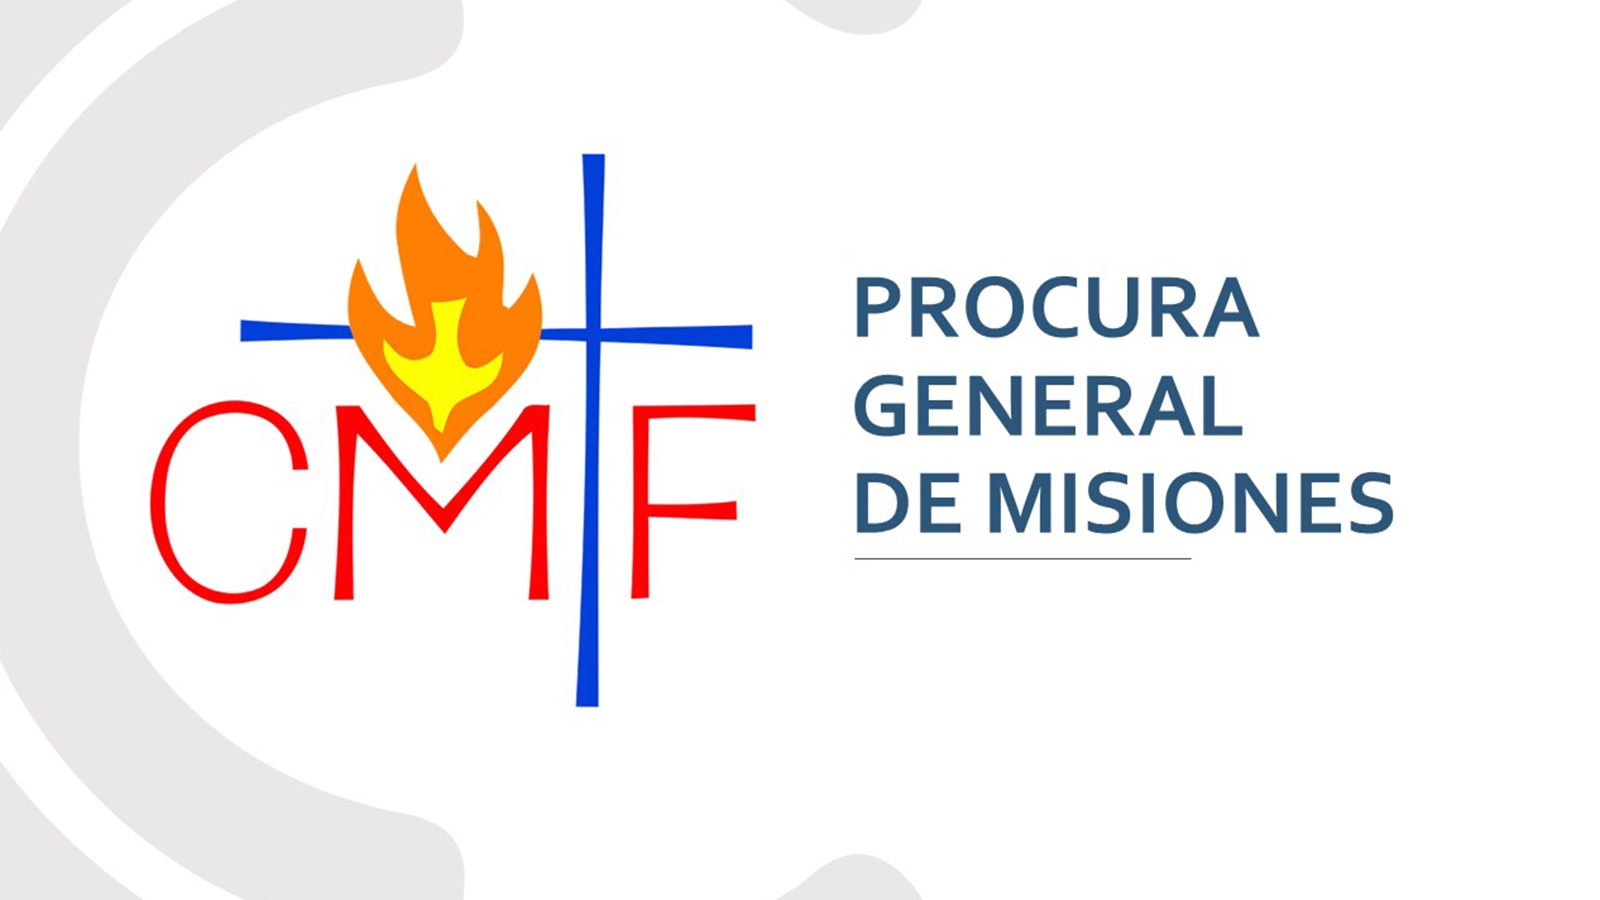 Información sobre la Procura General de Misiones